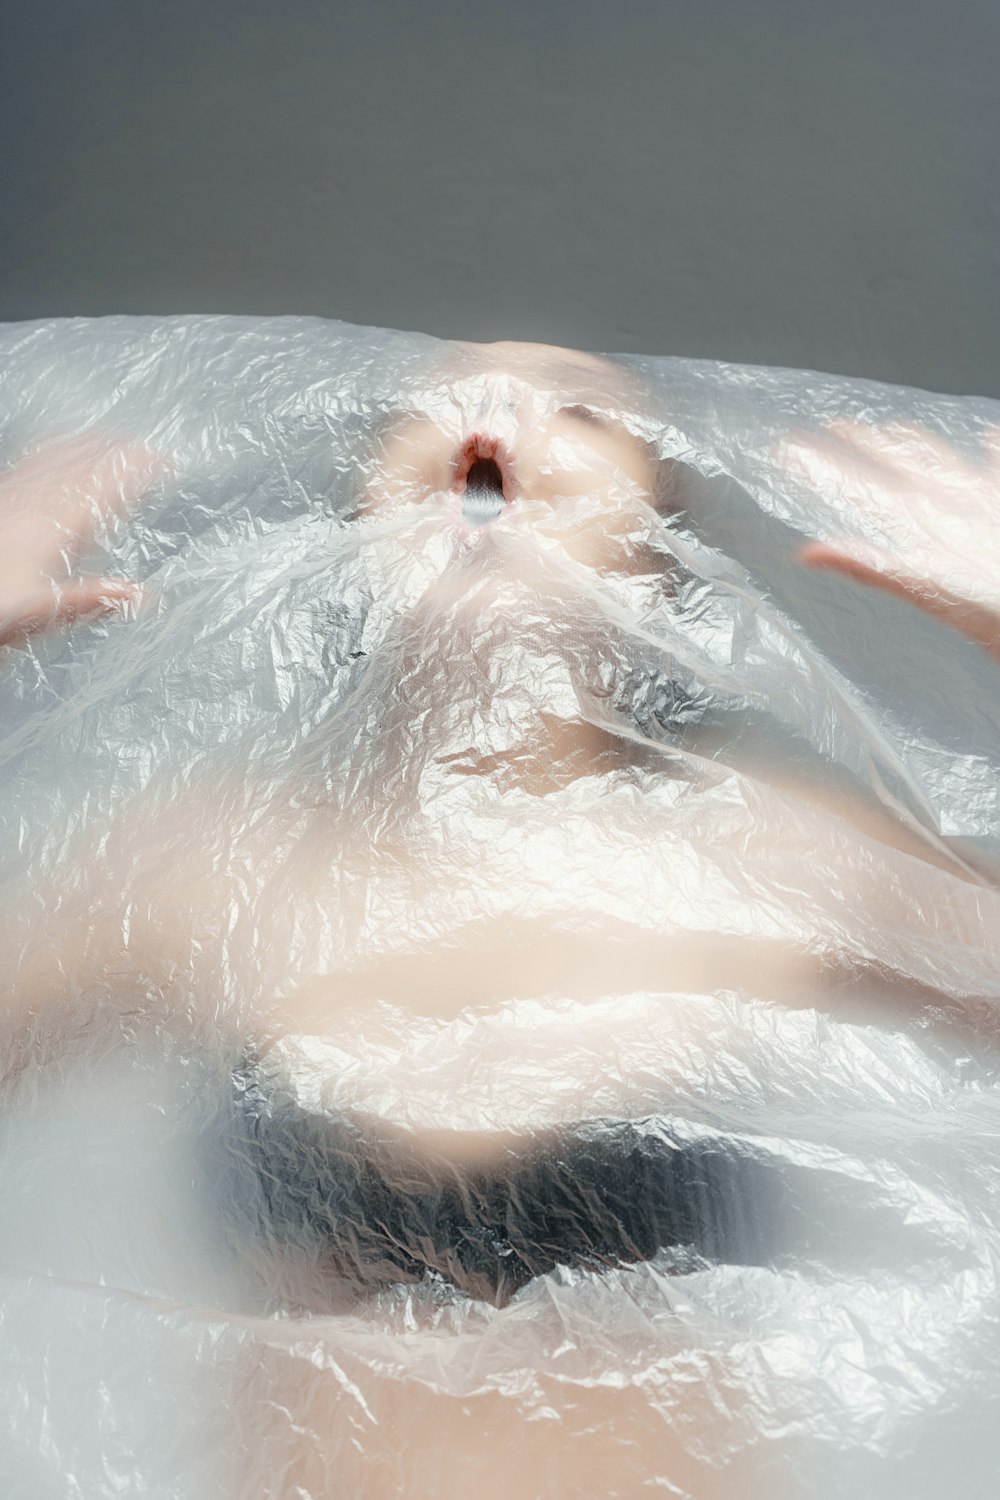 eine Frau, die in einer mit Plastik bedeckten Badewanne liegt